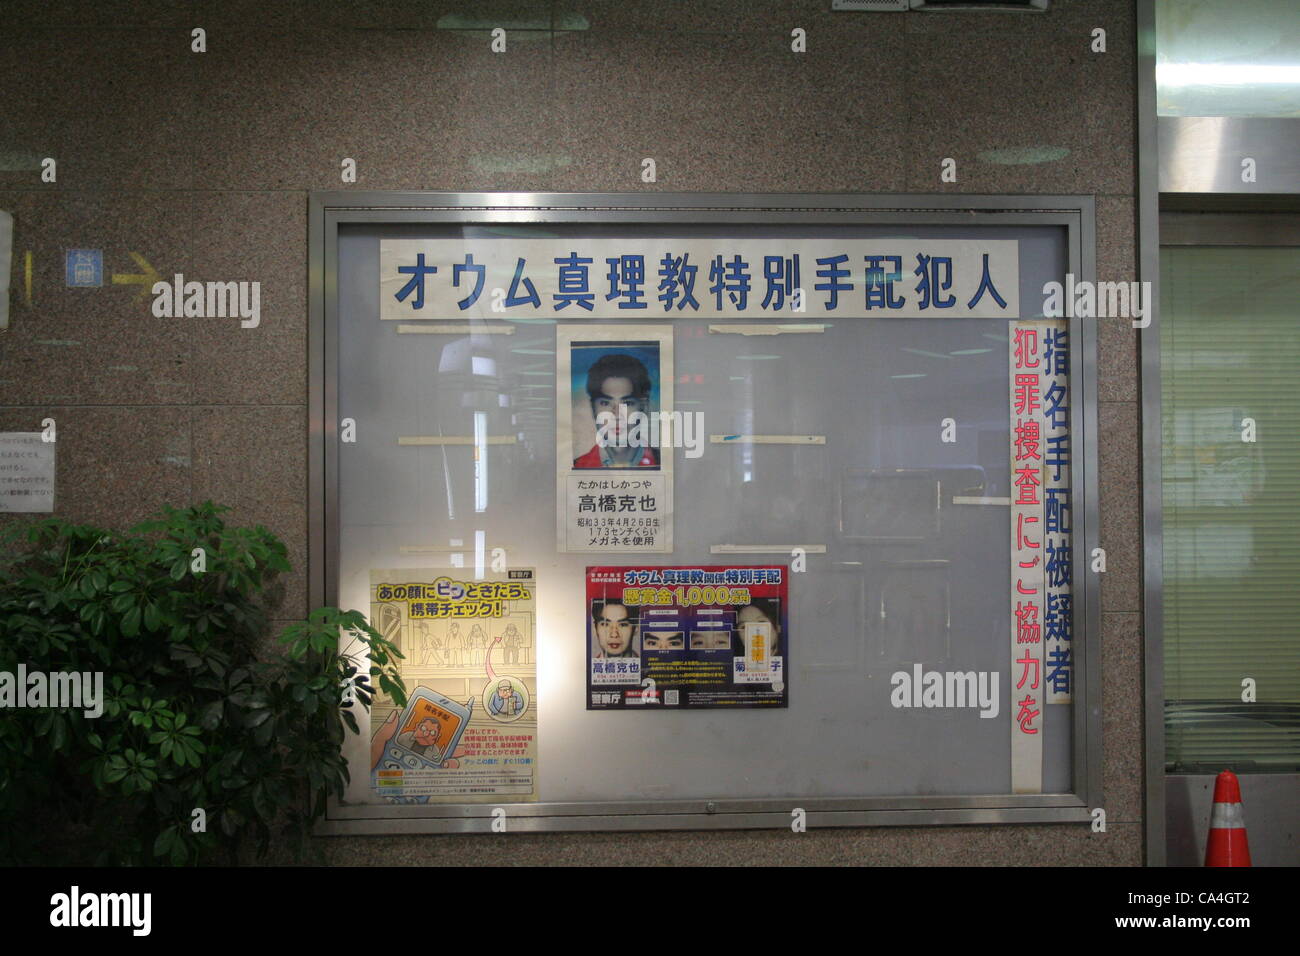 Il manifesto wanted di un ex Aum Shinrikyo culto stati visualizzati in Tokyo, Giappone. Naoko Kikuchi è stato arrestato per la metropolitana di Tokyo gas sarin di attacco, dopo 17 anni di corsa Domenica 3 Giugno, 2012. Katsuya Takahashi è rimasta solo la fugitive avente 10 milioni di yen bounty sulla sua testa. Foto Stock